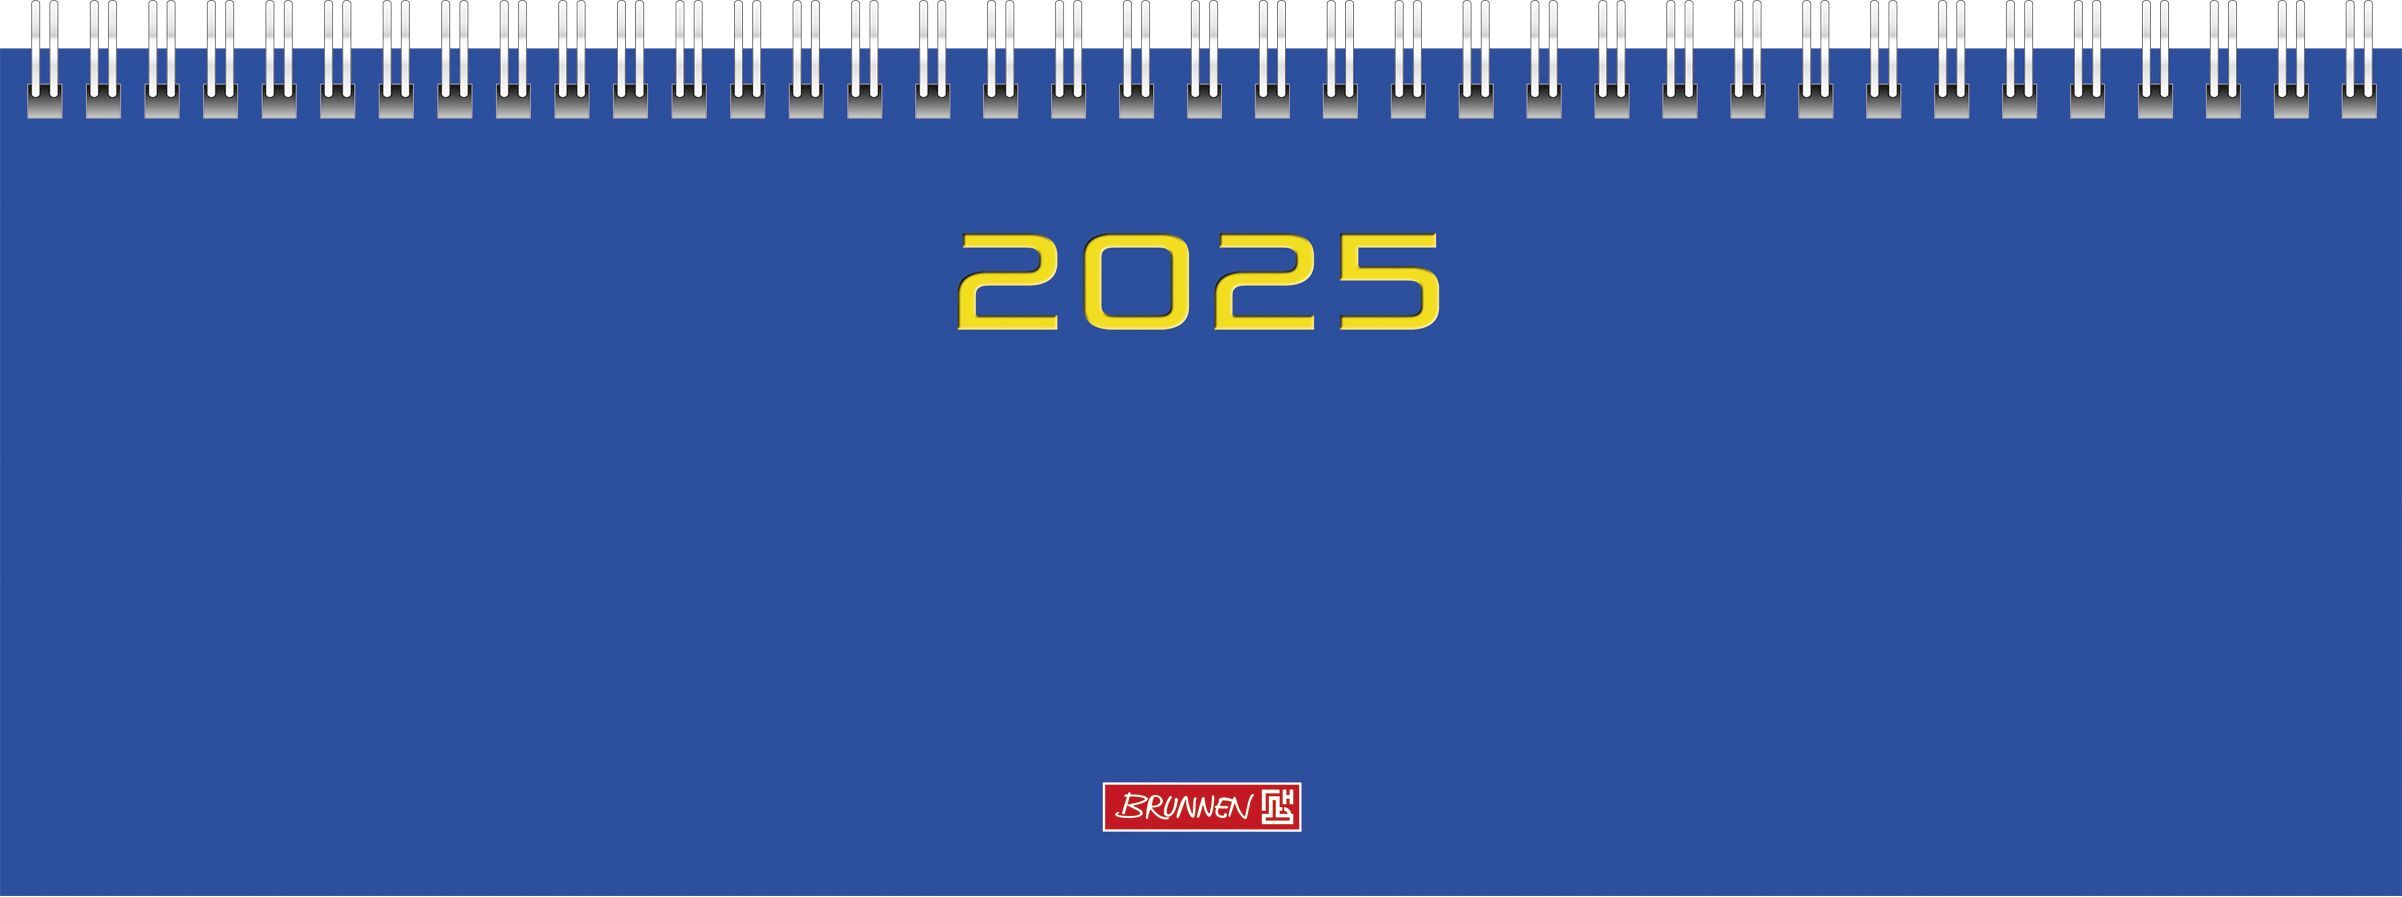 Brunnen 1077261035 Querterminbuch Modell 772 (2025)| 2 Seiten = 1 Woche| 297 × 105 mm| 112 Seiten| Karton-Einband| blau